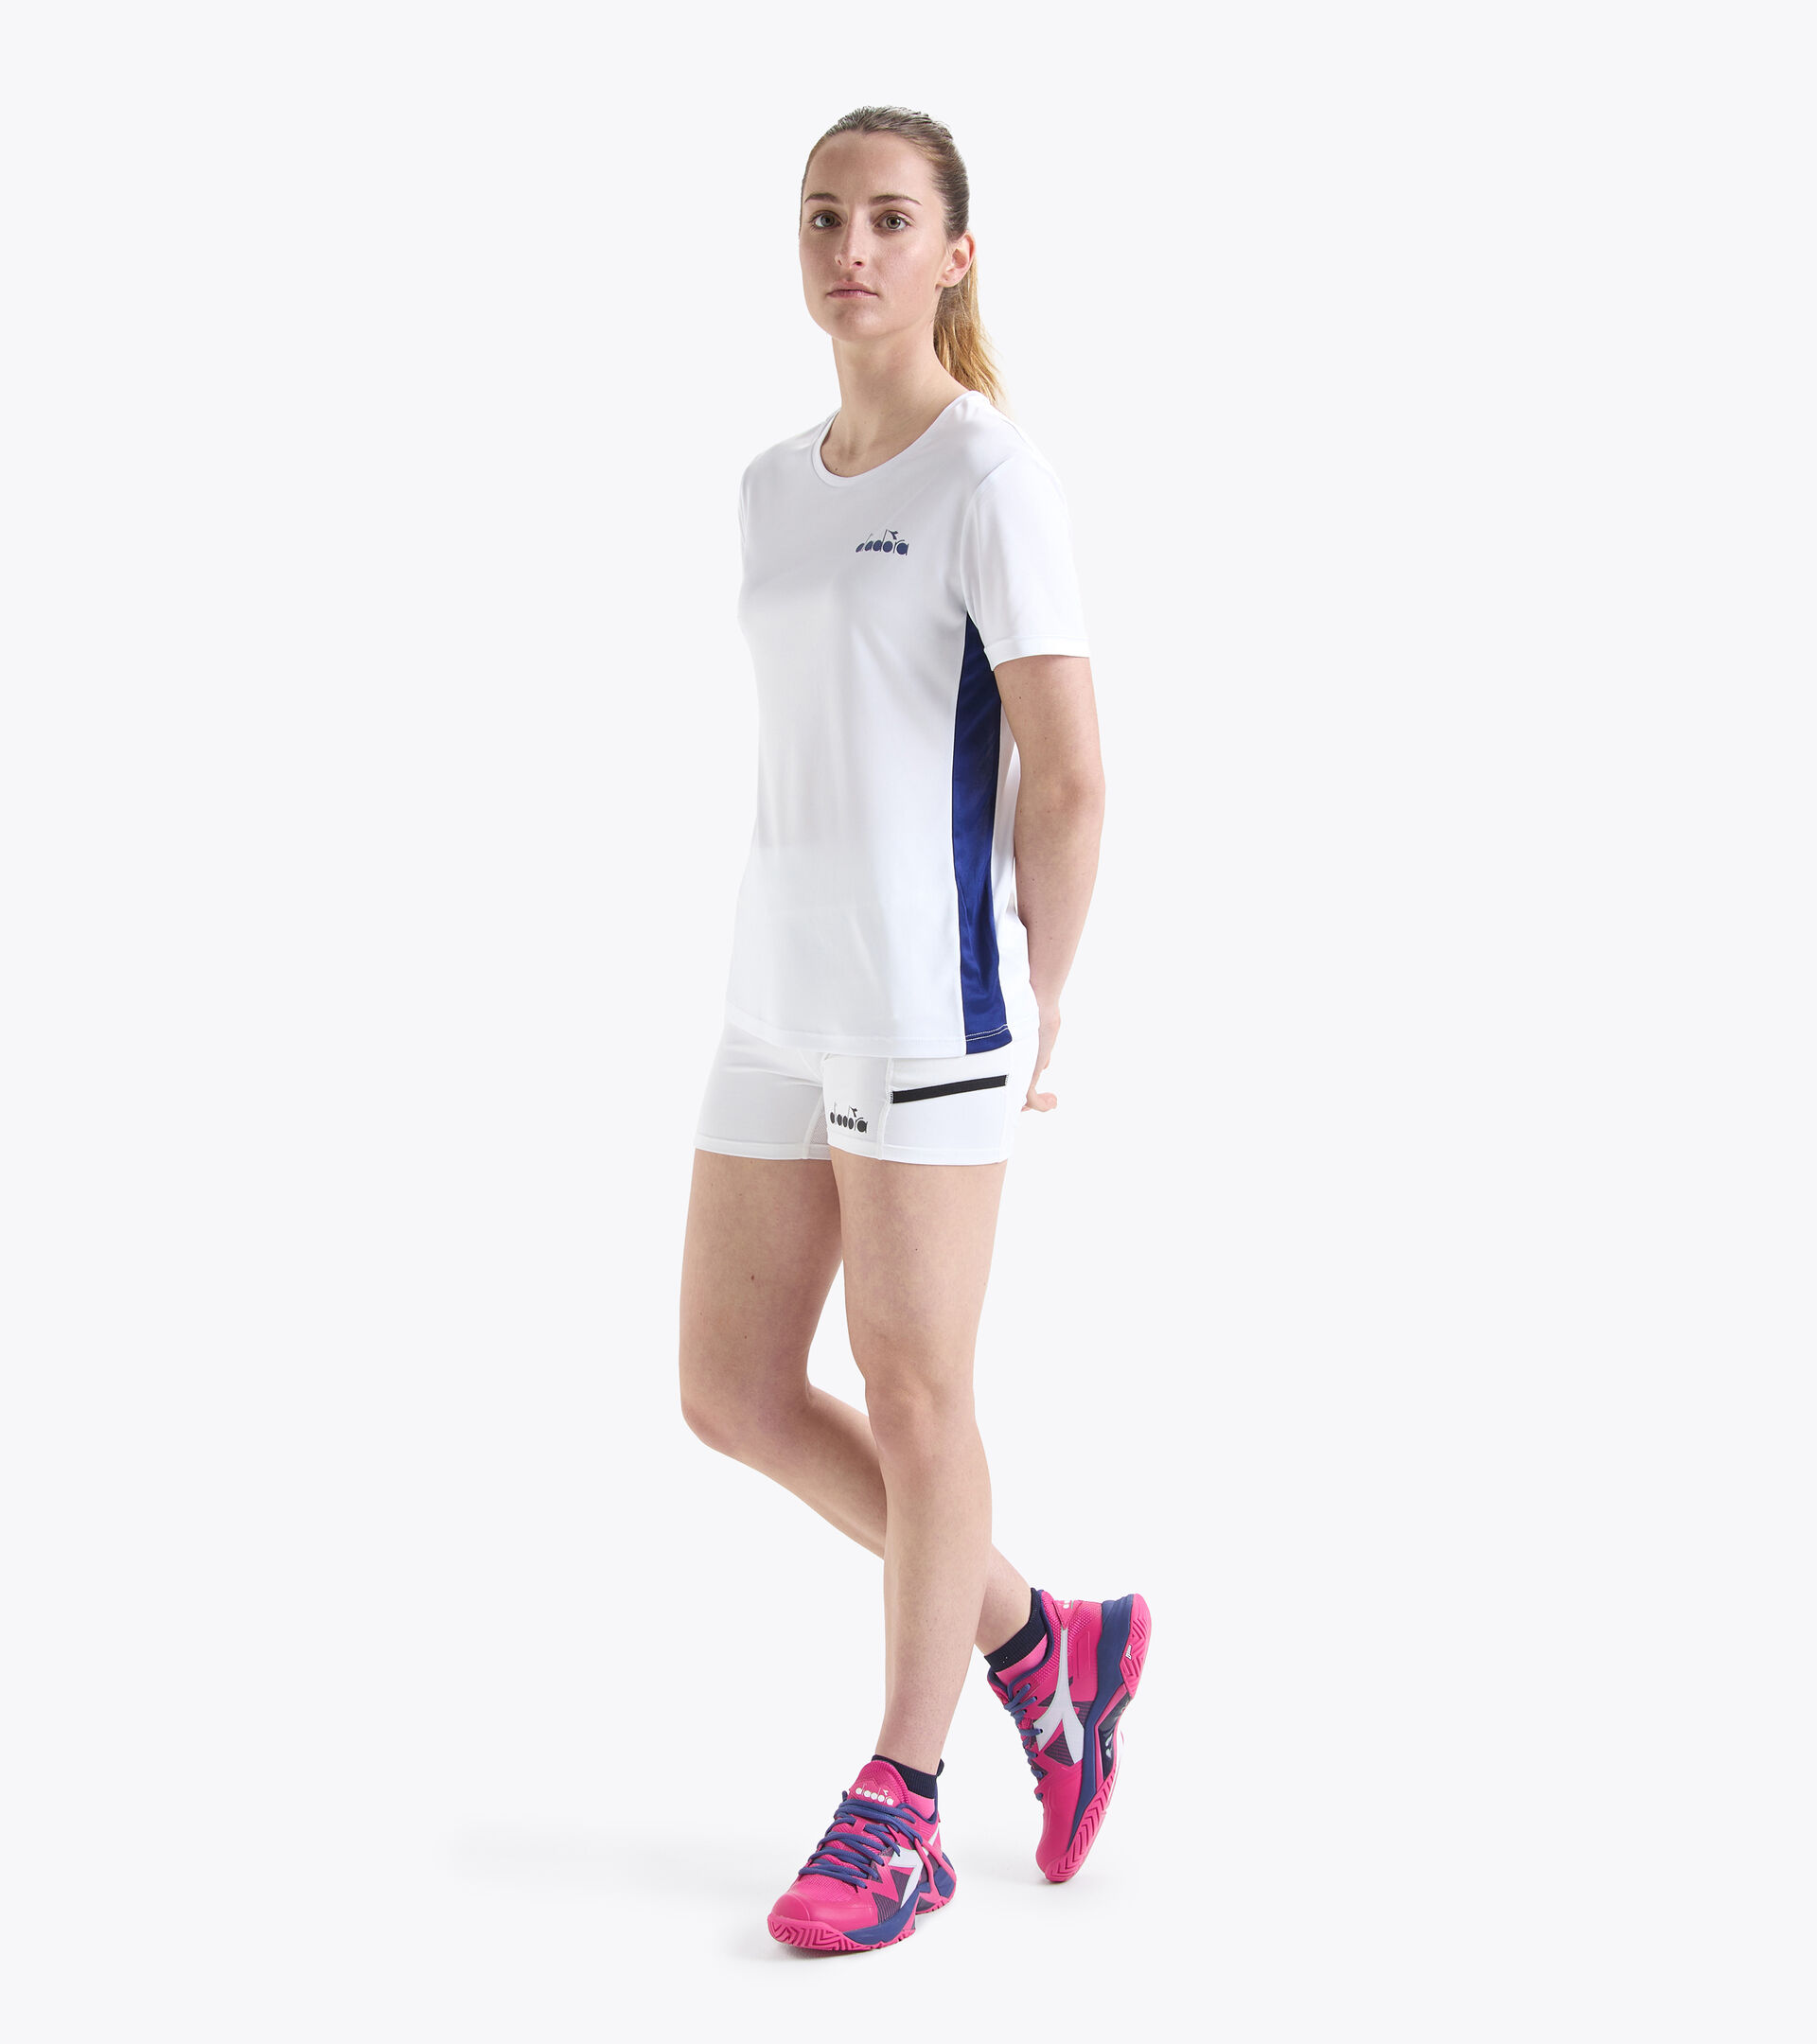 Tennis-Shorts - Damen L. SHORT TIGHTS POCKET STRAHLEND WEISSE - Diadora